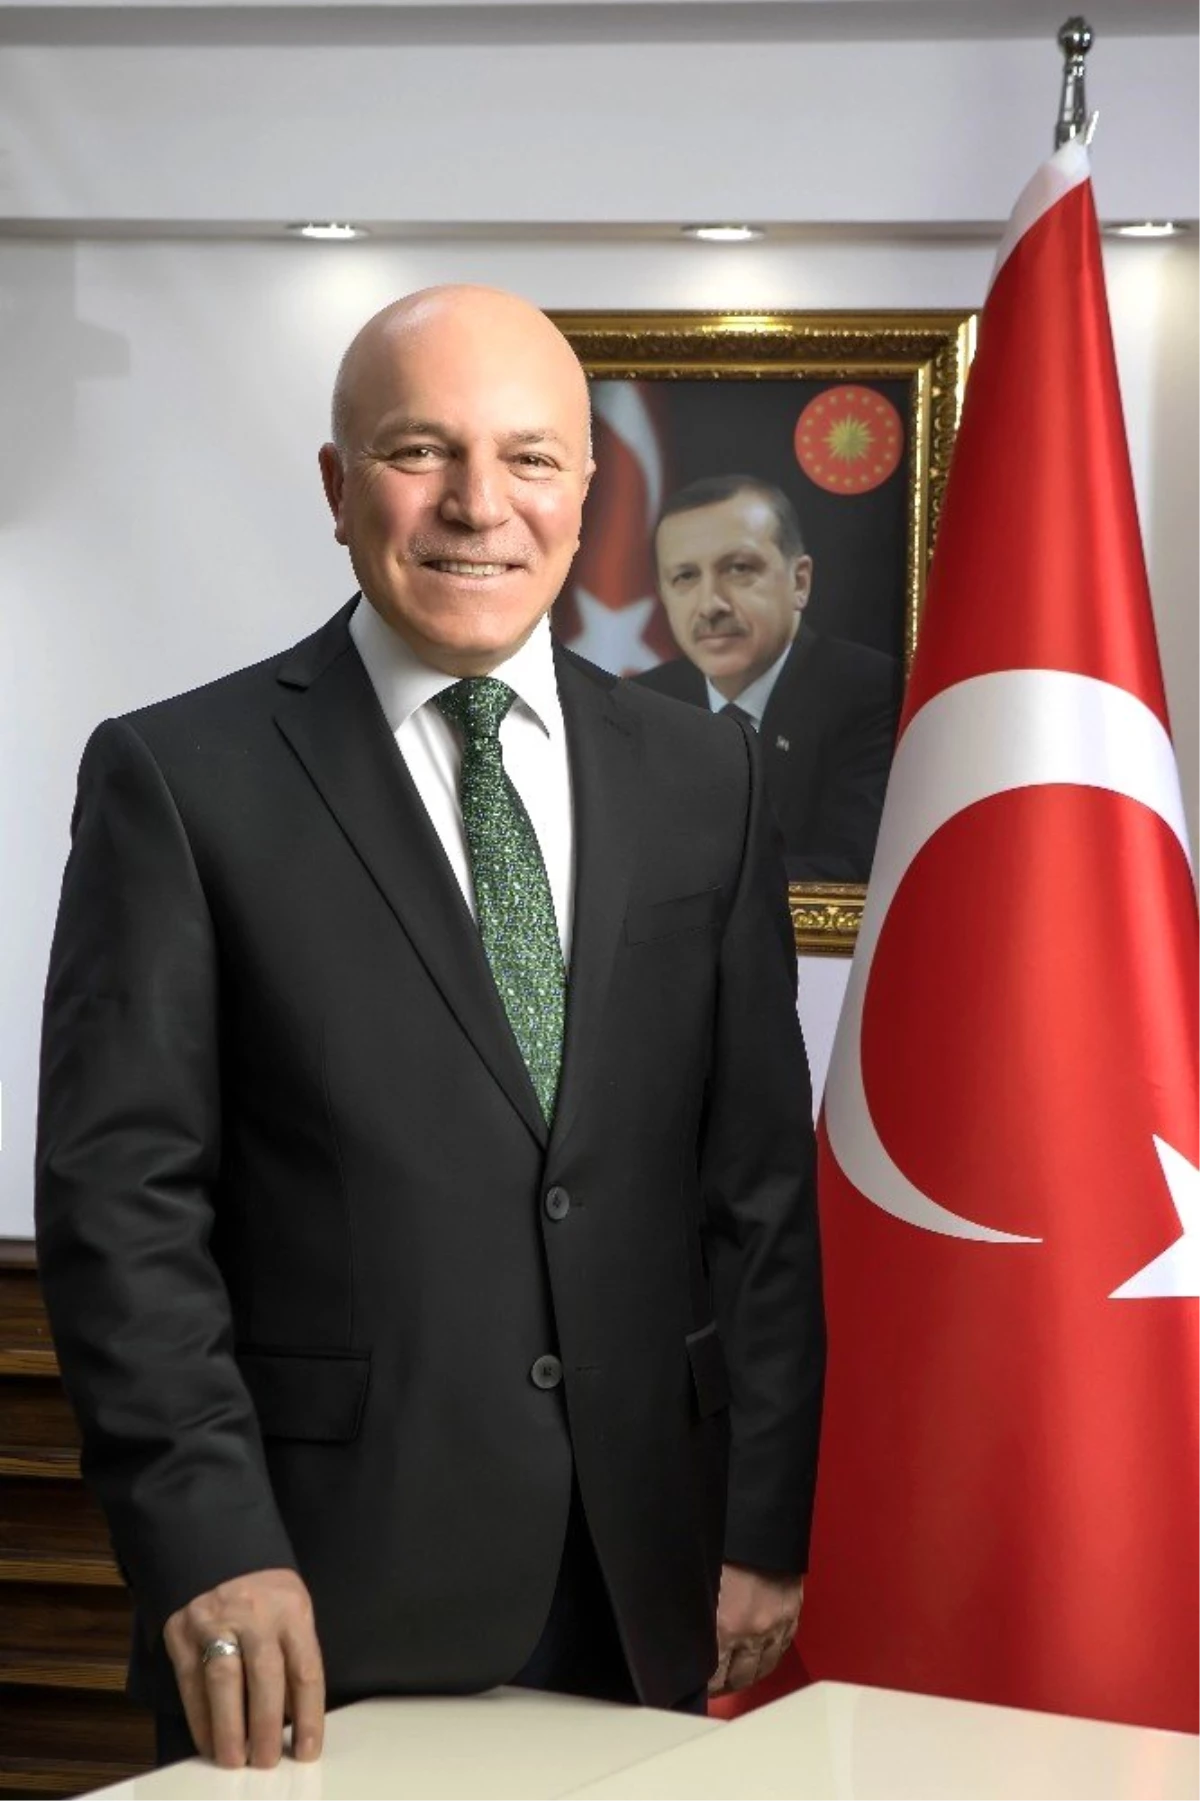 Başkan Sekmen: "Teşekkürler Erzurum, Teşekkürler Aziz Dadaşlar"